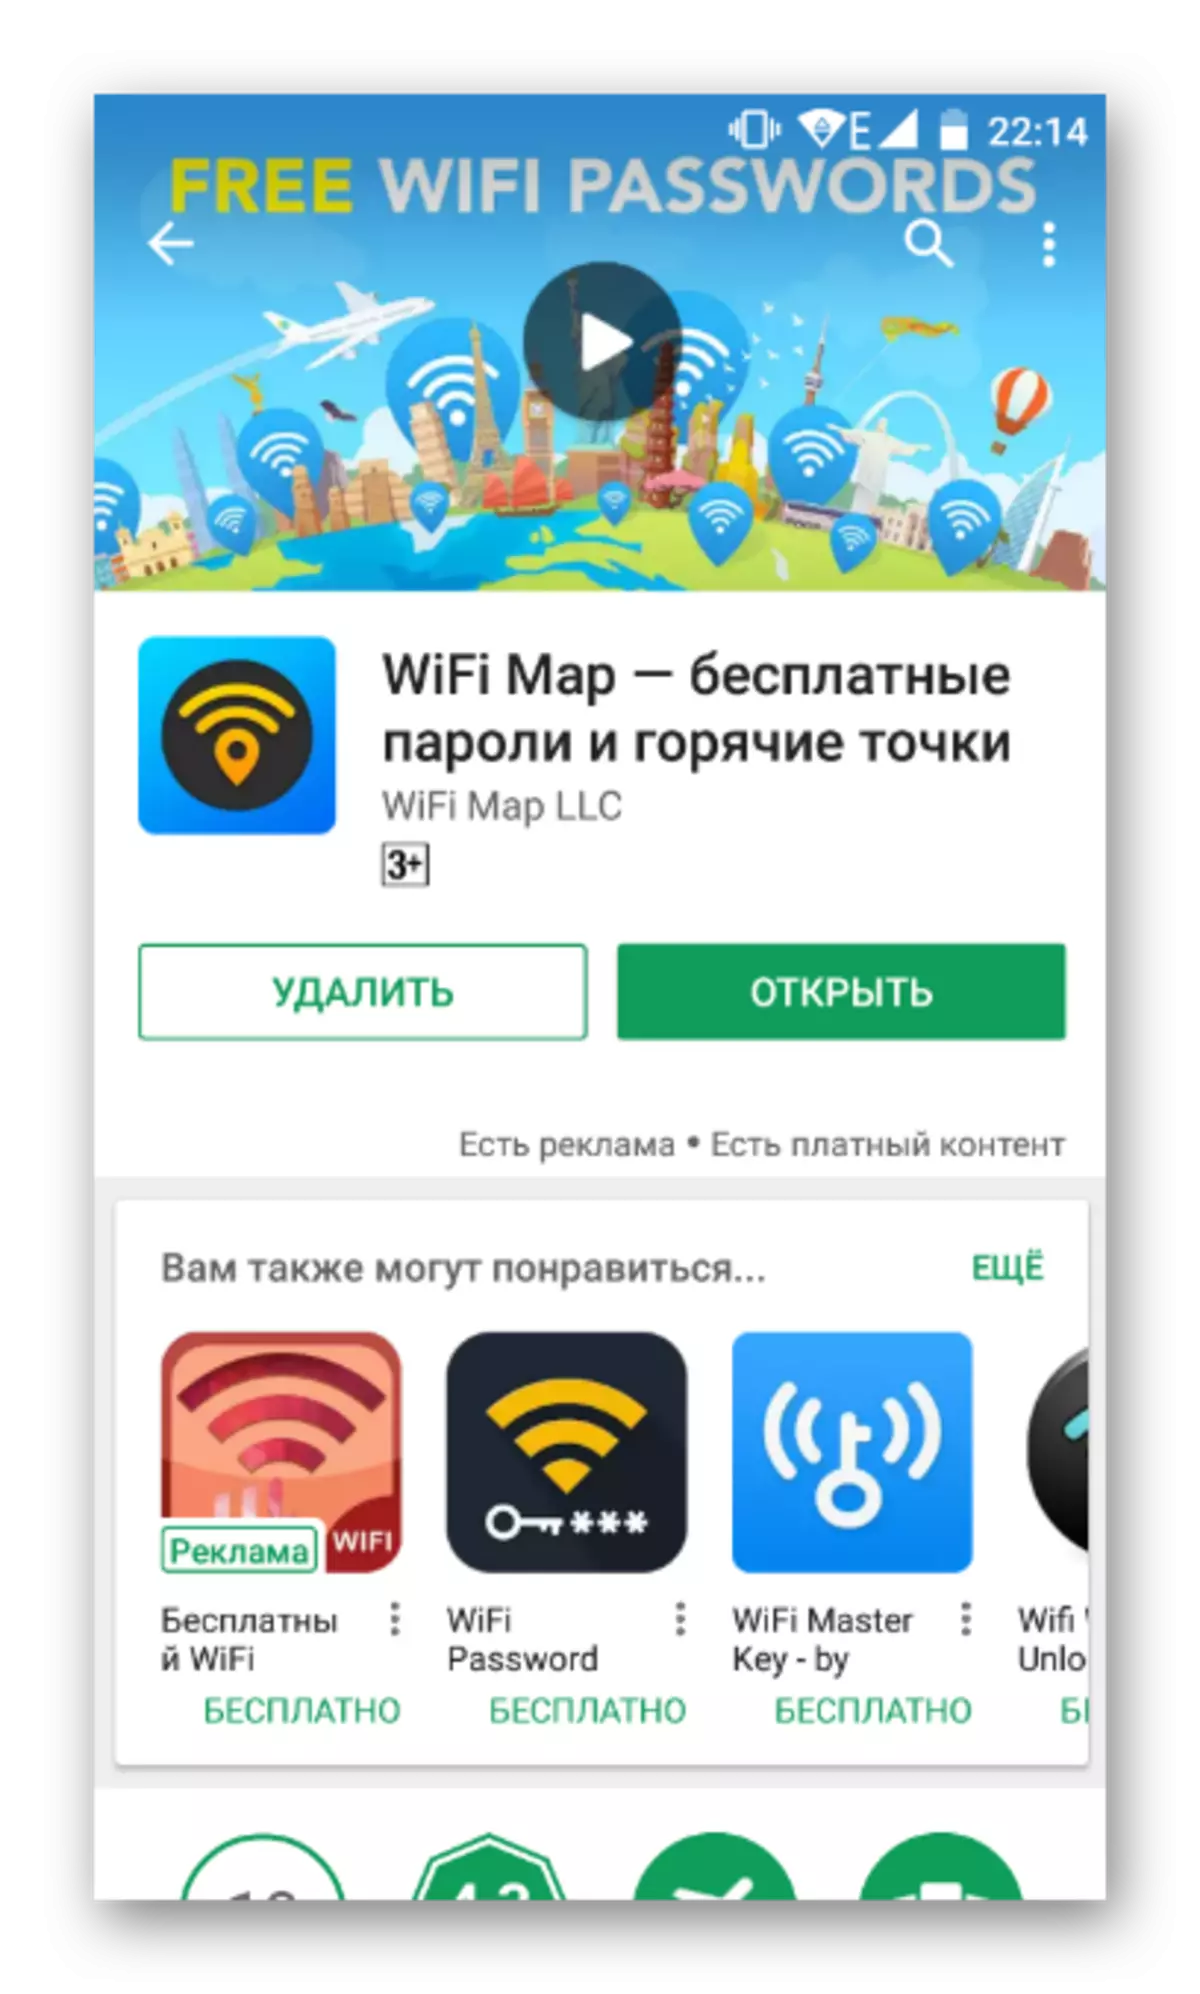 დააინსტალირეთ WiFi რუკა Android- ზე